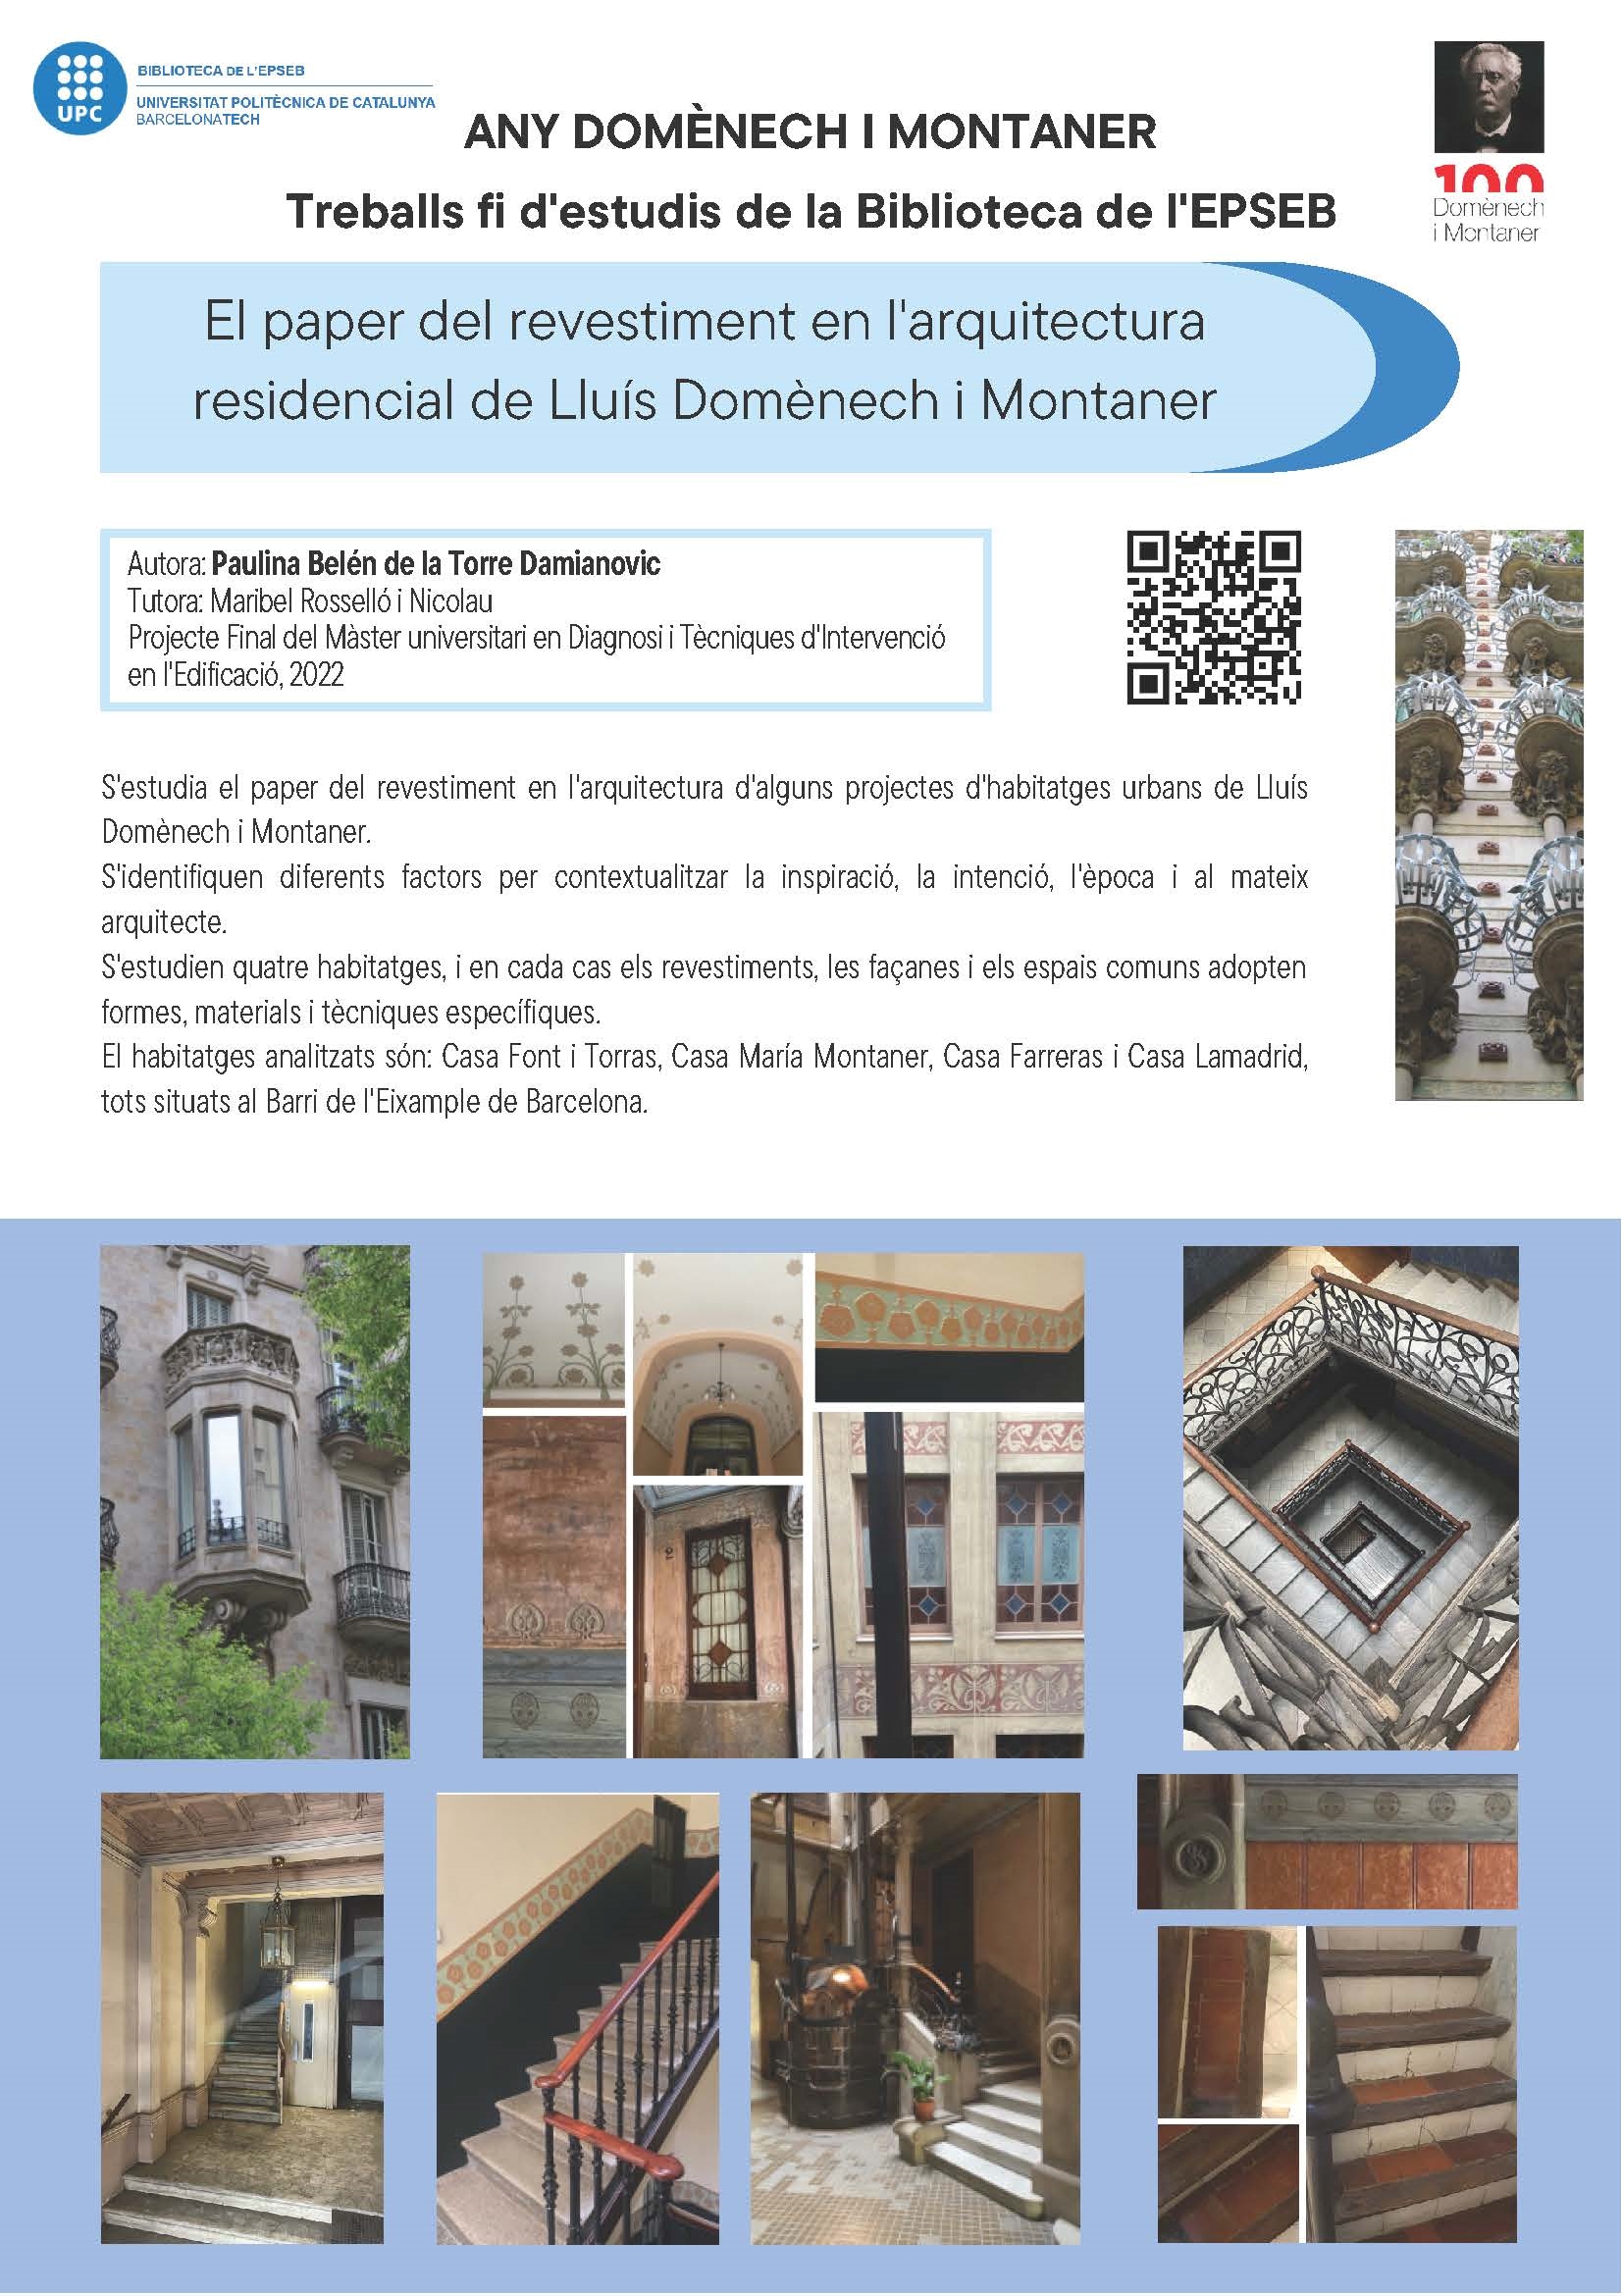 El paper del revestiment a l'arquitectura residencial de Lluís Domènech i Montaner